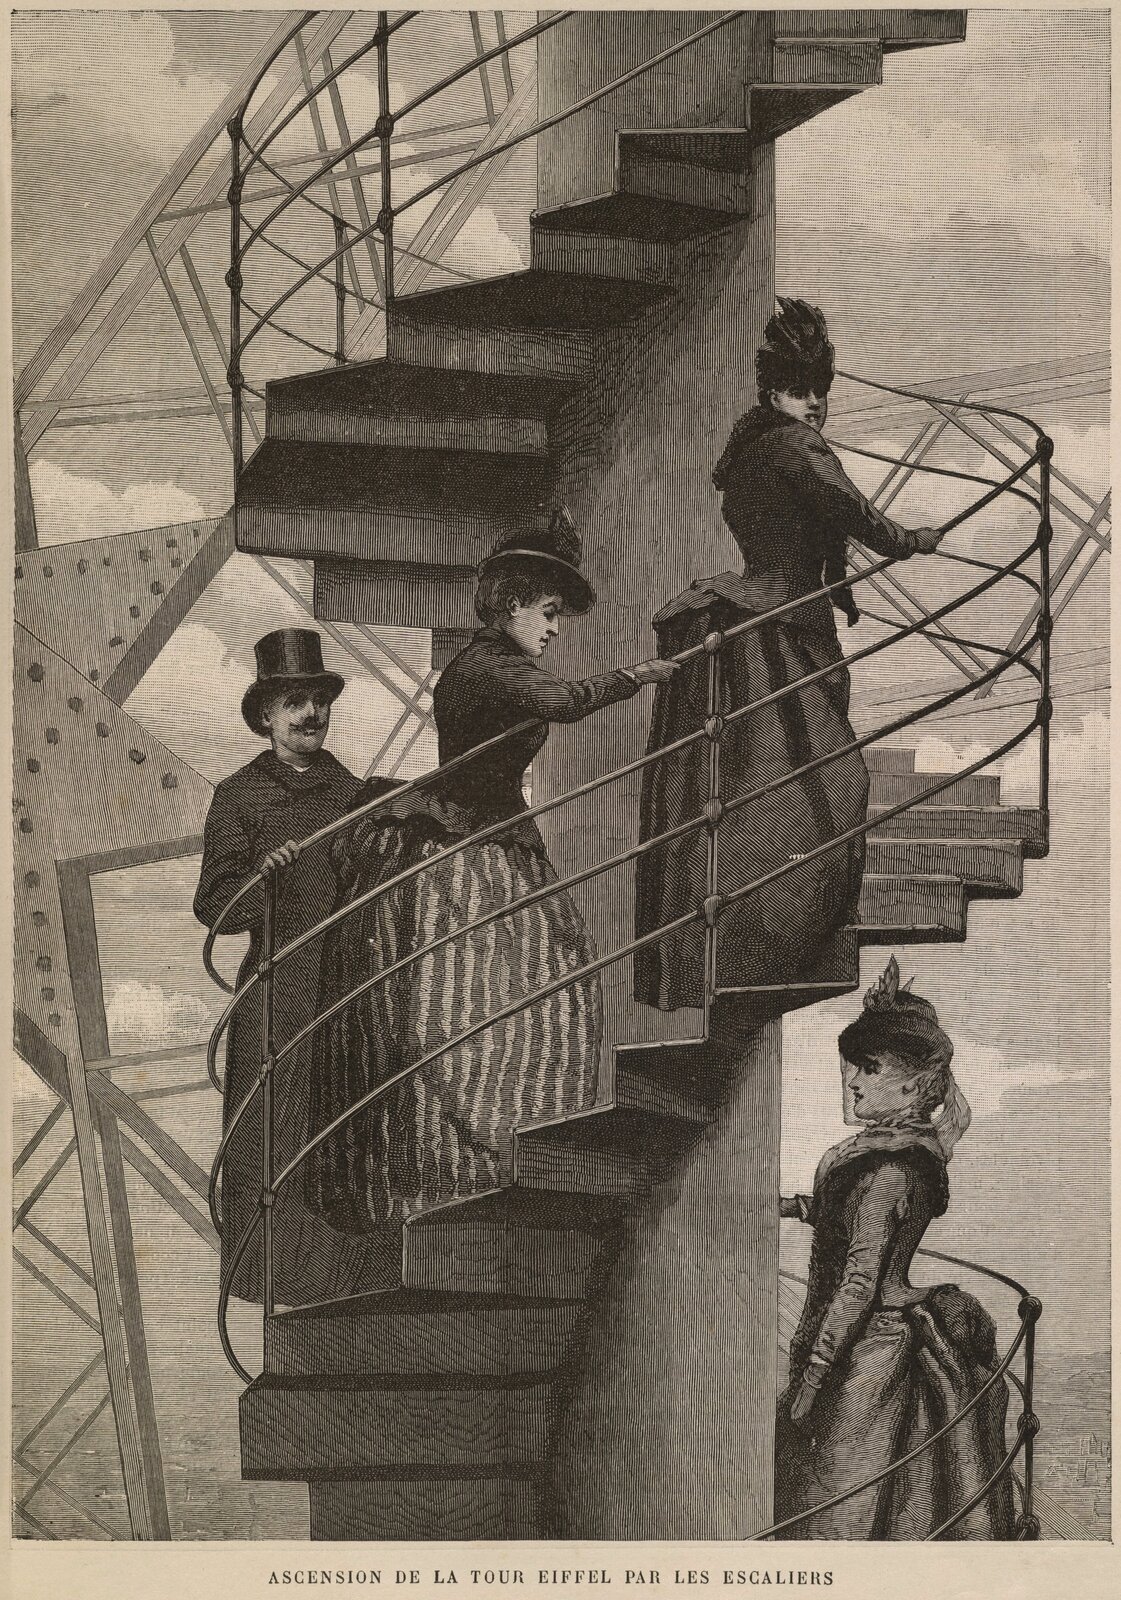  Ilustracja przedstawia  fragment  wieży Eiffla. Po krętych metalowych schodach wchodzą trzy kobiety i jeden mężczyzna. Kobiety mają długie suknie z tiurniurą ( udrapowanym z tyłu materiałem), krótkie marynarki i kapelusze. Mężczyzna ma długi płaszcz i cylinder. Schody maja metalową balustradę z czterech poziomych prętów połączonych pionowymi podpórkami przymocowanymi do schodów. W tle elementy konstrukcyjne wieży. 